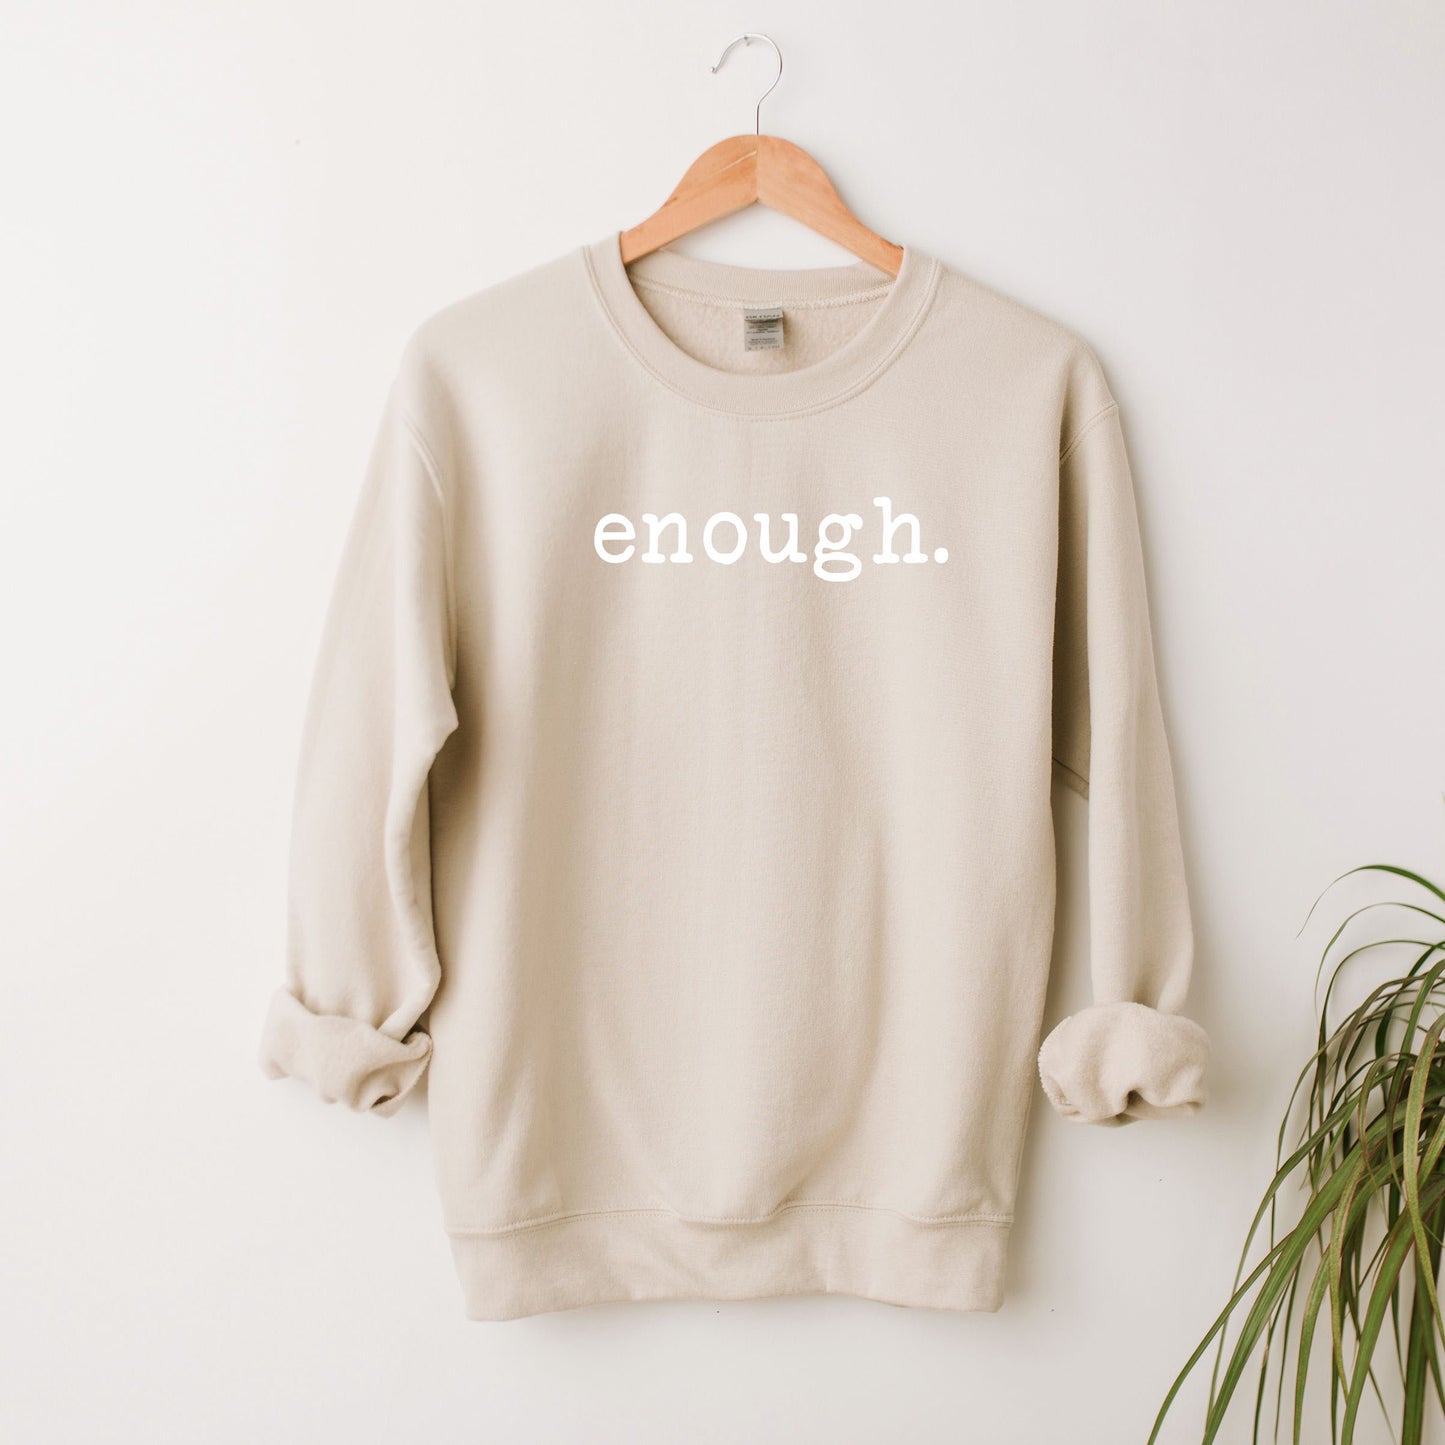 Enough Typewriter | Sweatshirt